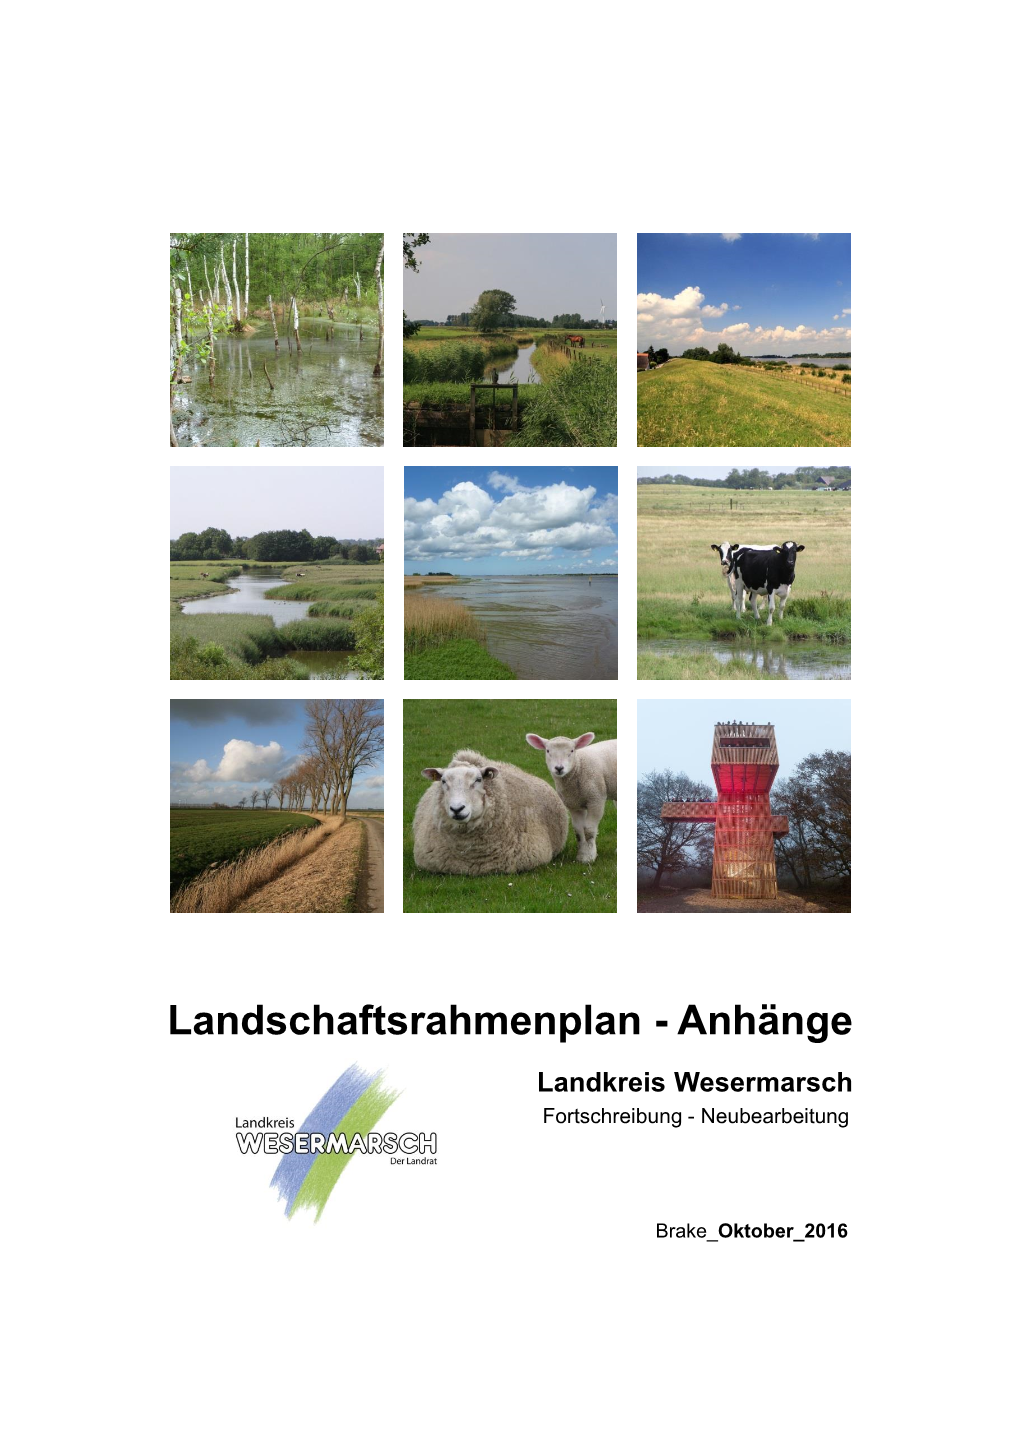 Landschaftsrahmenplan - Anhänge Landkreis Wesermarsch Fortschreibung - Neubearbeitung